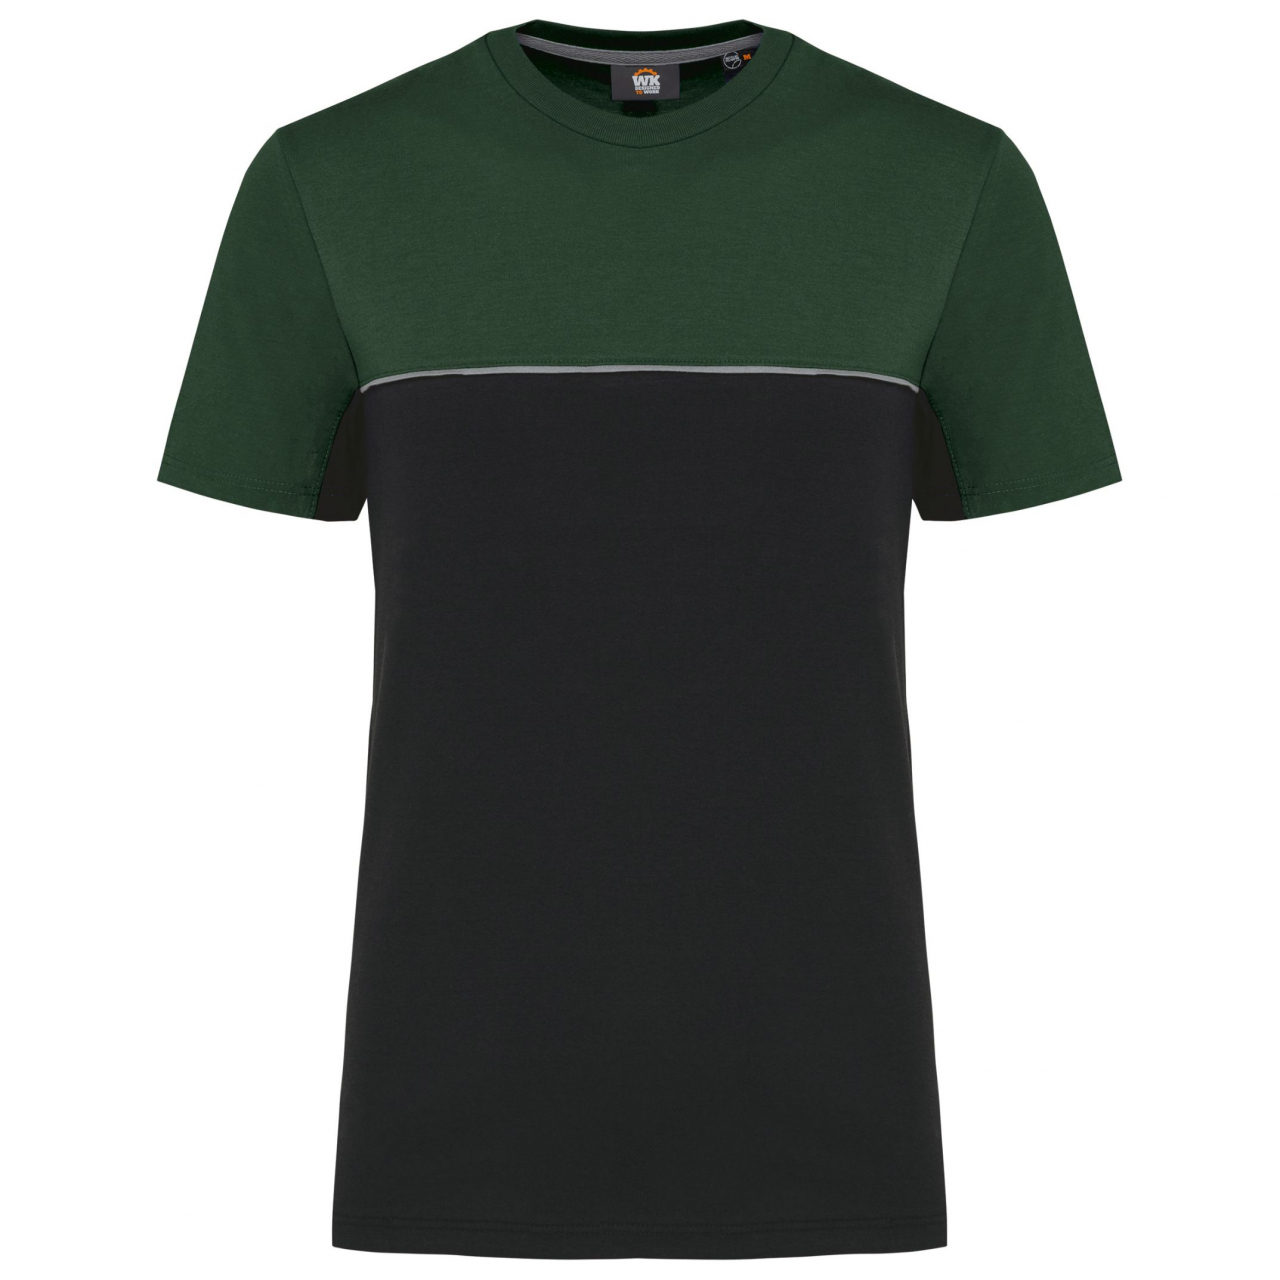 Pracovní triko dvoubarevné WK - černé-zelené, 4XL